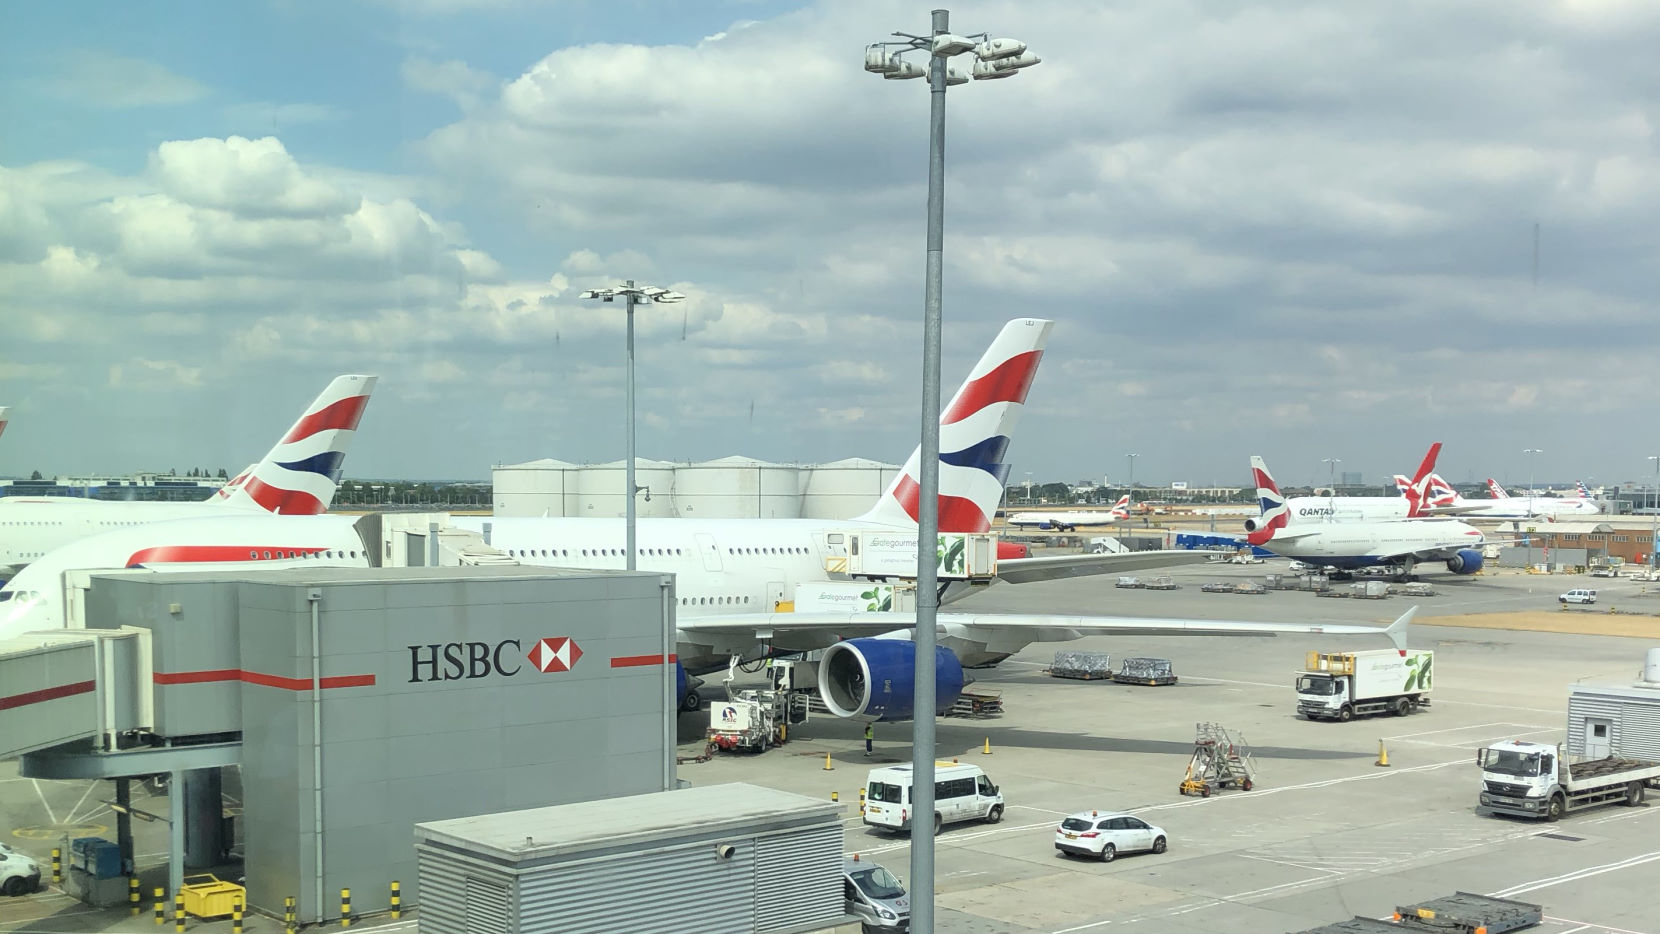 British Airways jets at LHR.